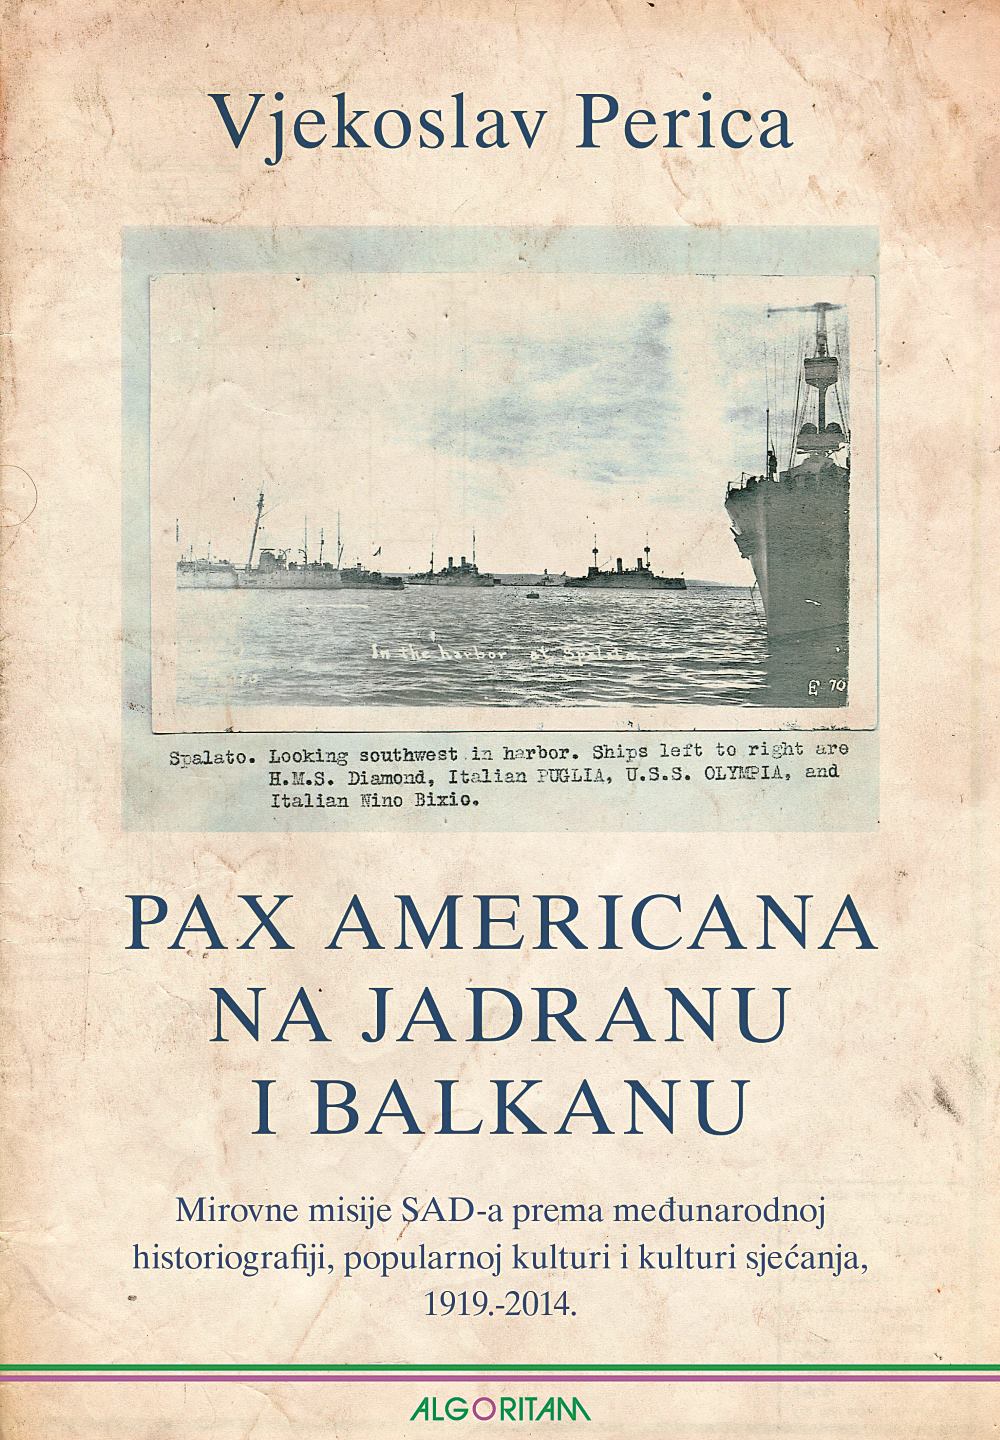 KNJIGA VJEKOSLAVA PERICE ‘Pax Americana na Jadranu i Balkanu’ objavljena je u izdanju Algoritma, a govori o golemom utjecaju SAD-a na naše prostore tijekom 20. stoljeća FOTO: ‘Pax Americana na Jadranu i Balkanu’